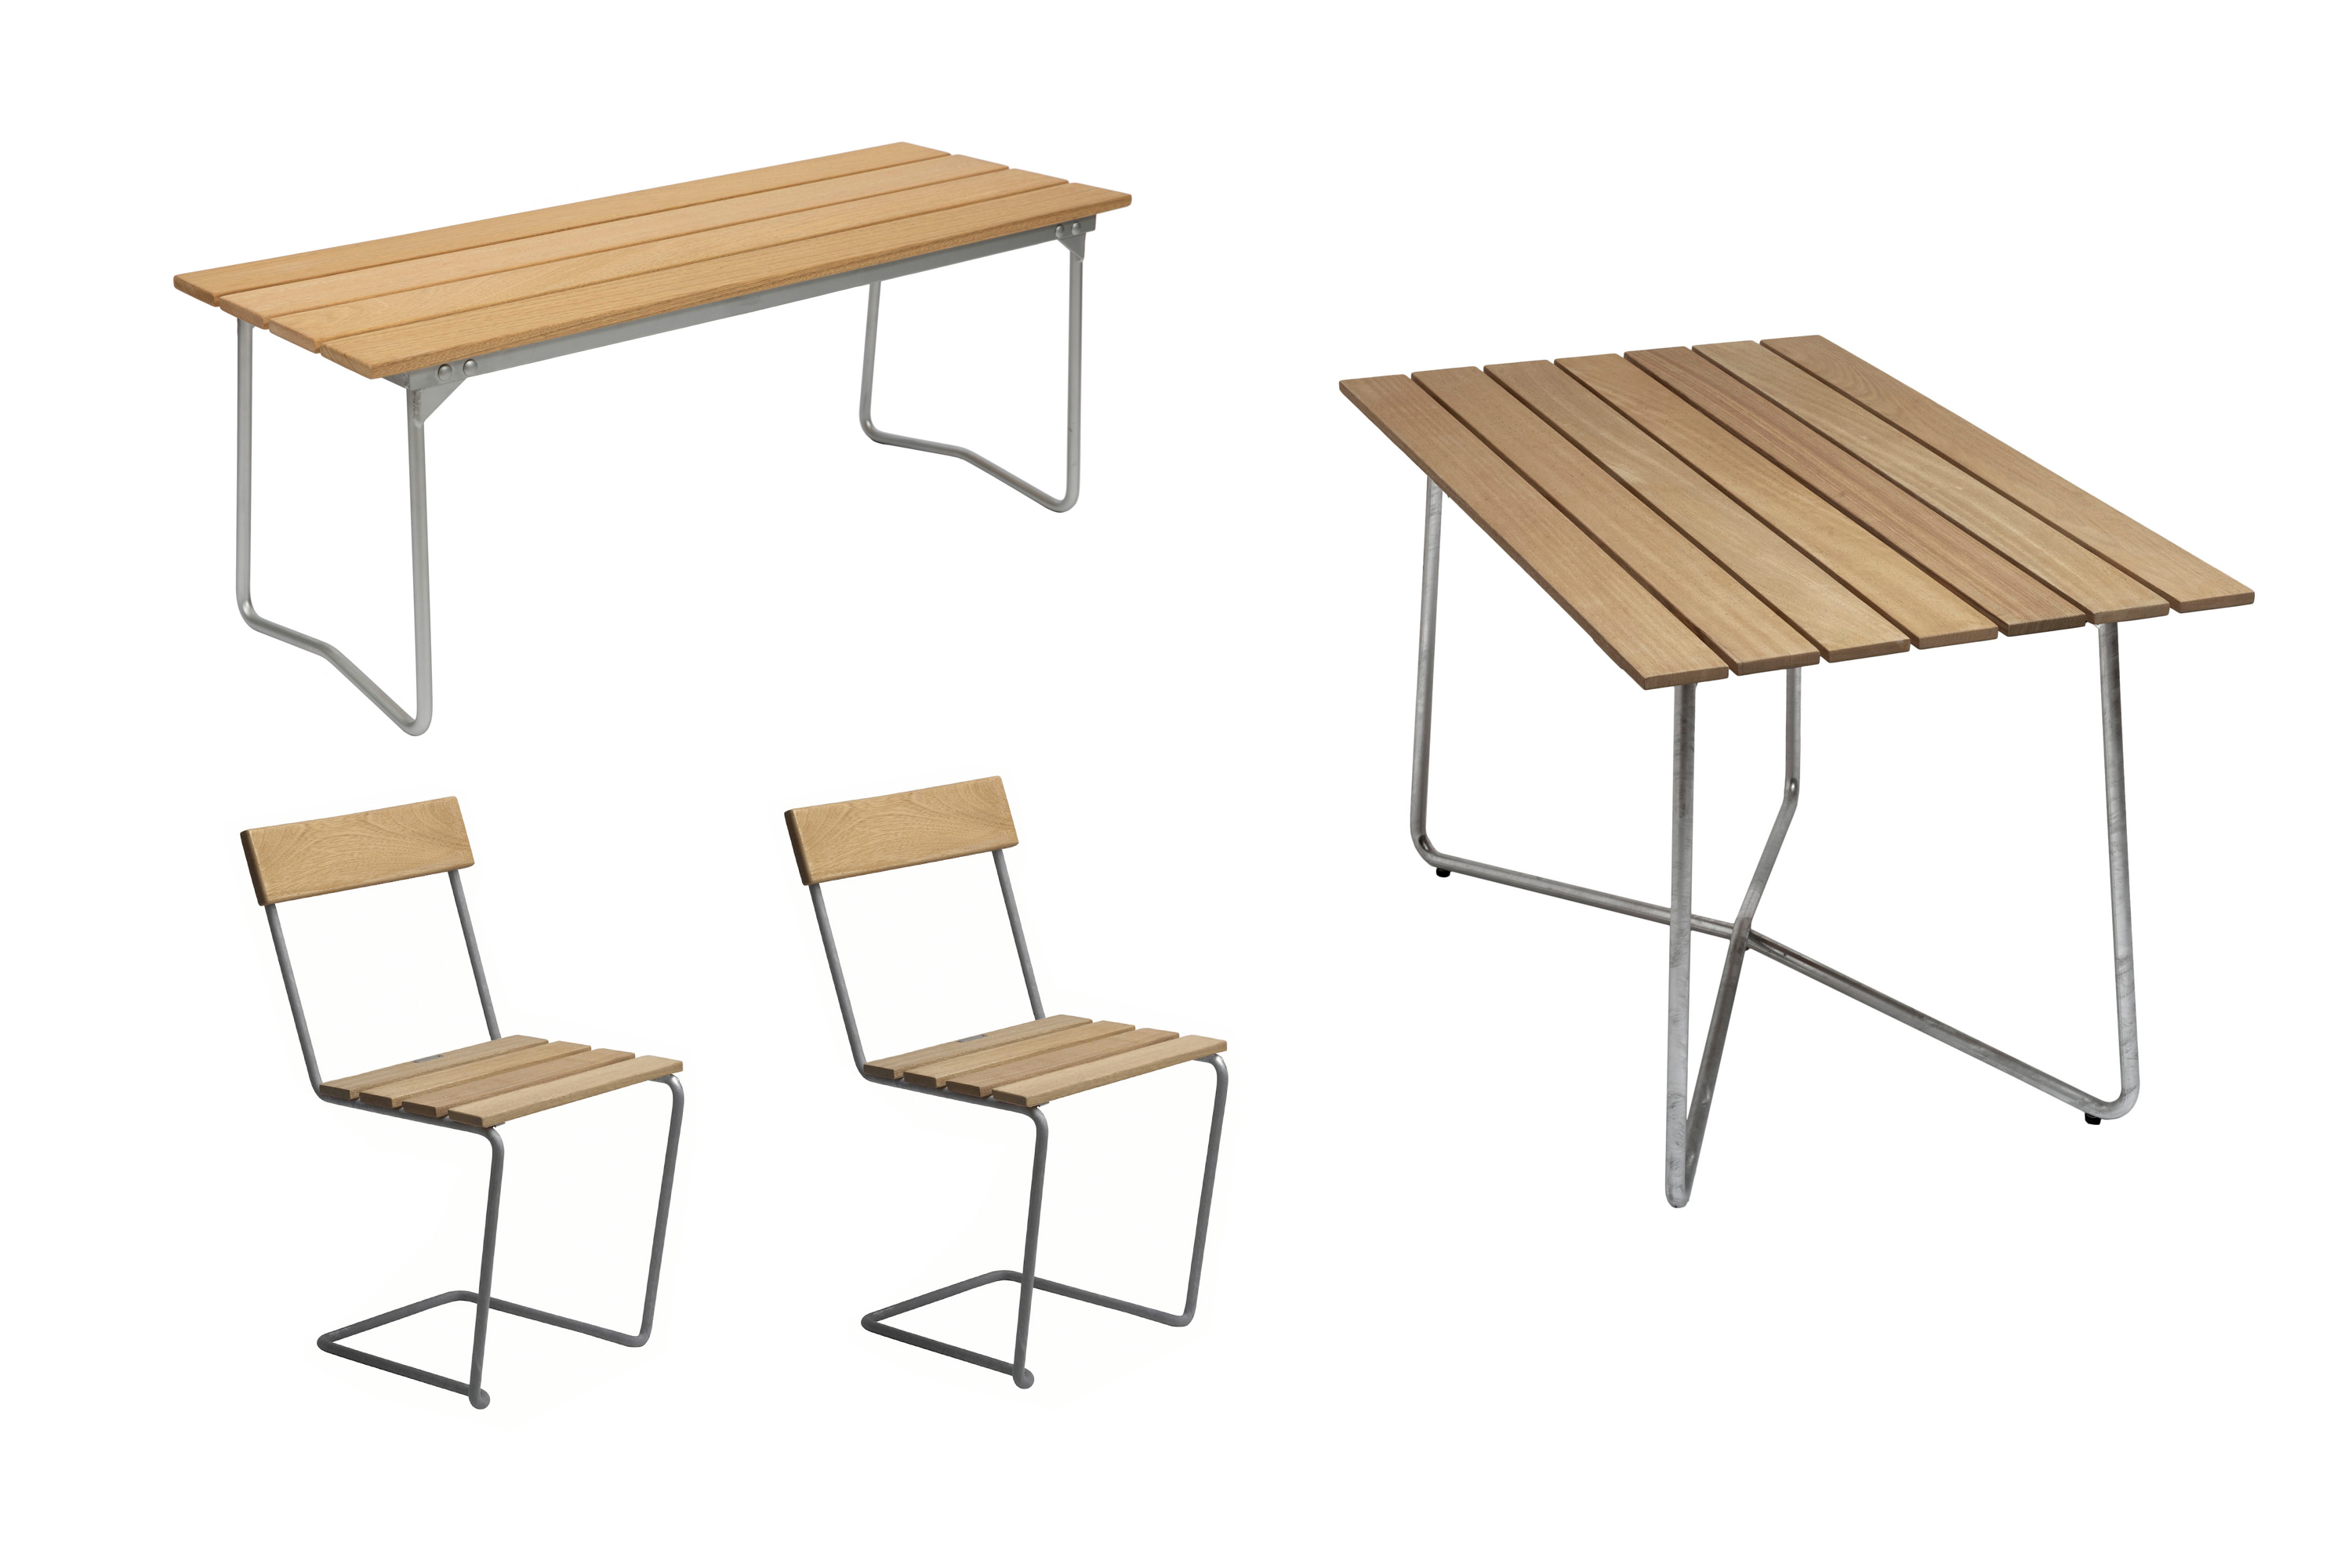 Grythyttan Stålmöbler B25 spisebordsæt Oljert eik/galvaniseret stål 2 stole, bænk 110 cm & bord120x70 cm